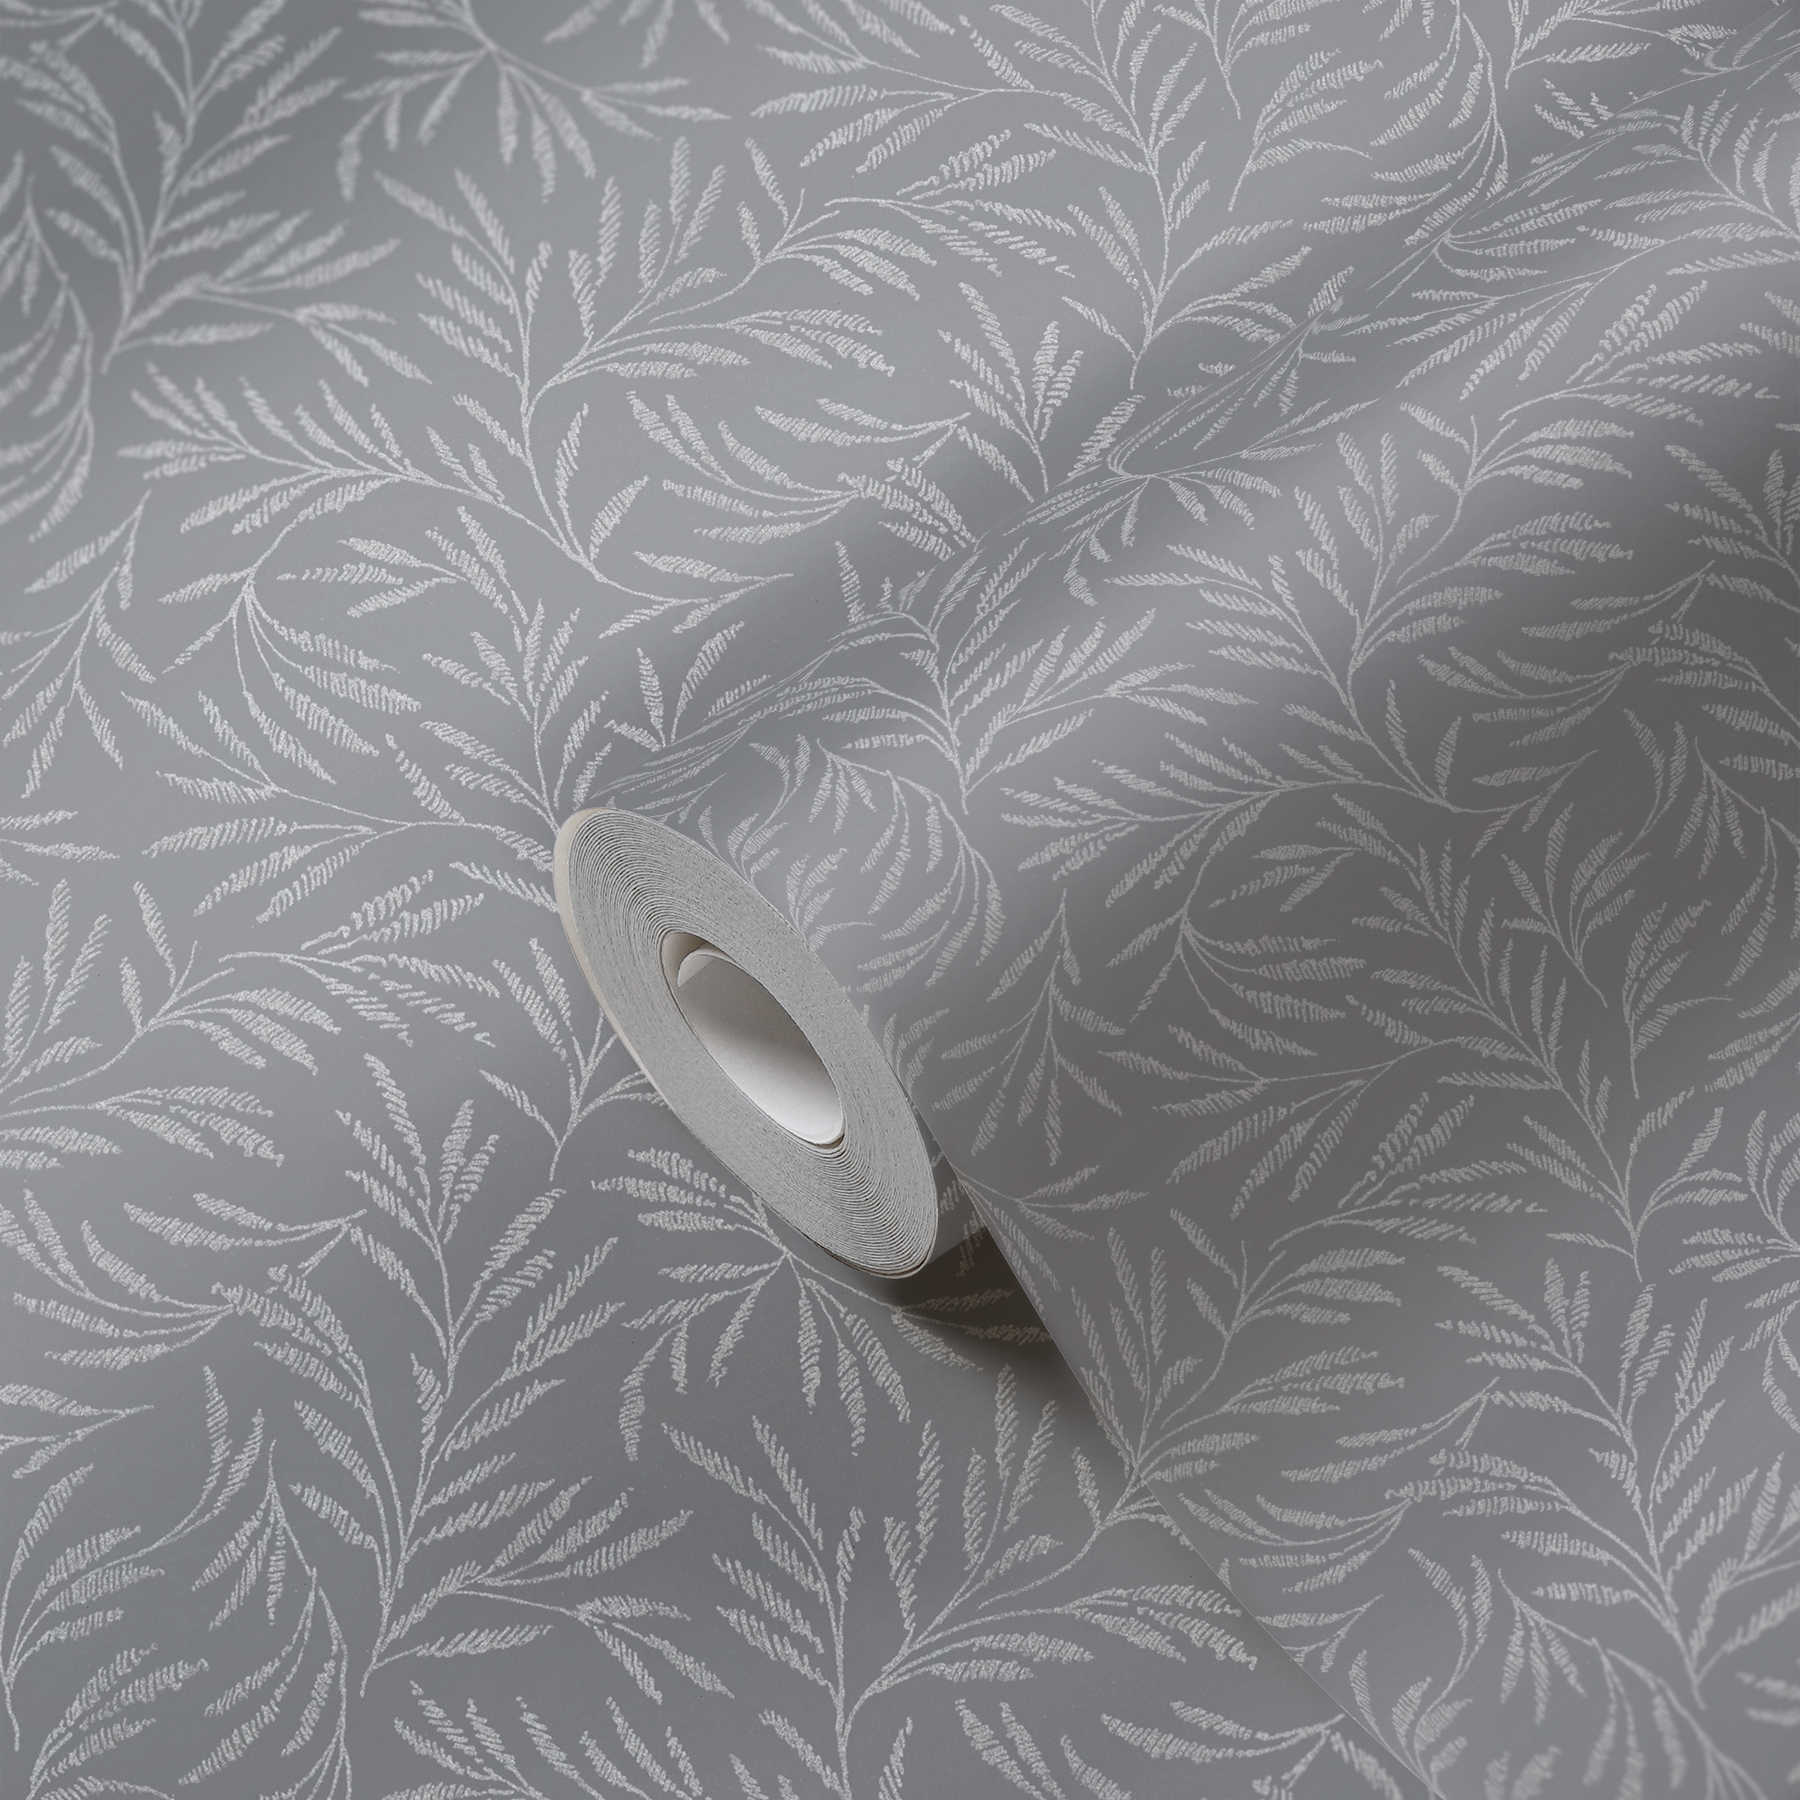             Papel pintado no tejido gris con motivos de hojas de plata
        